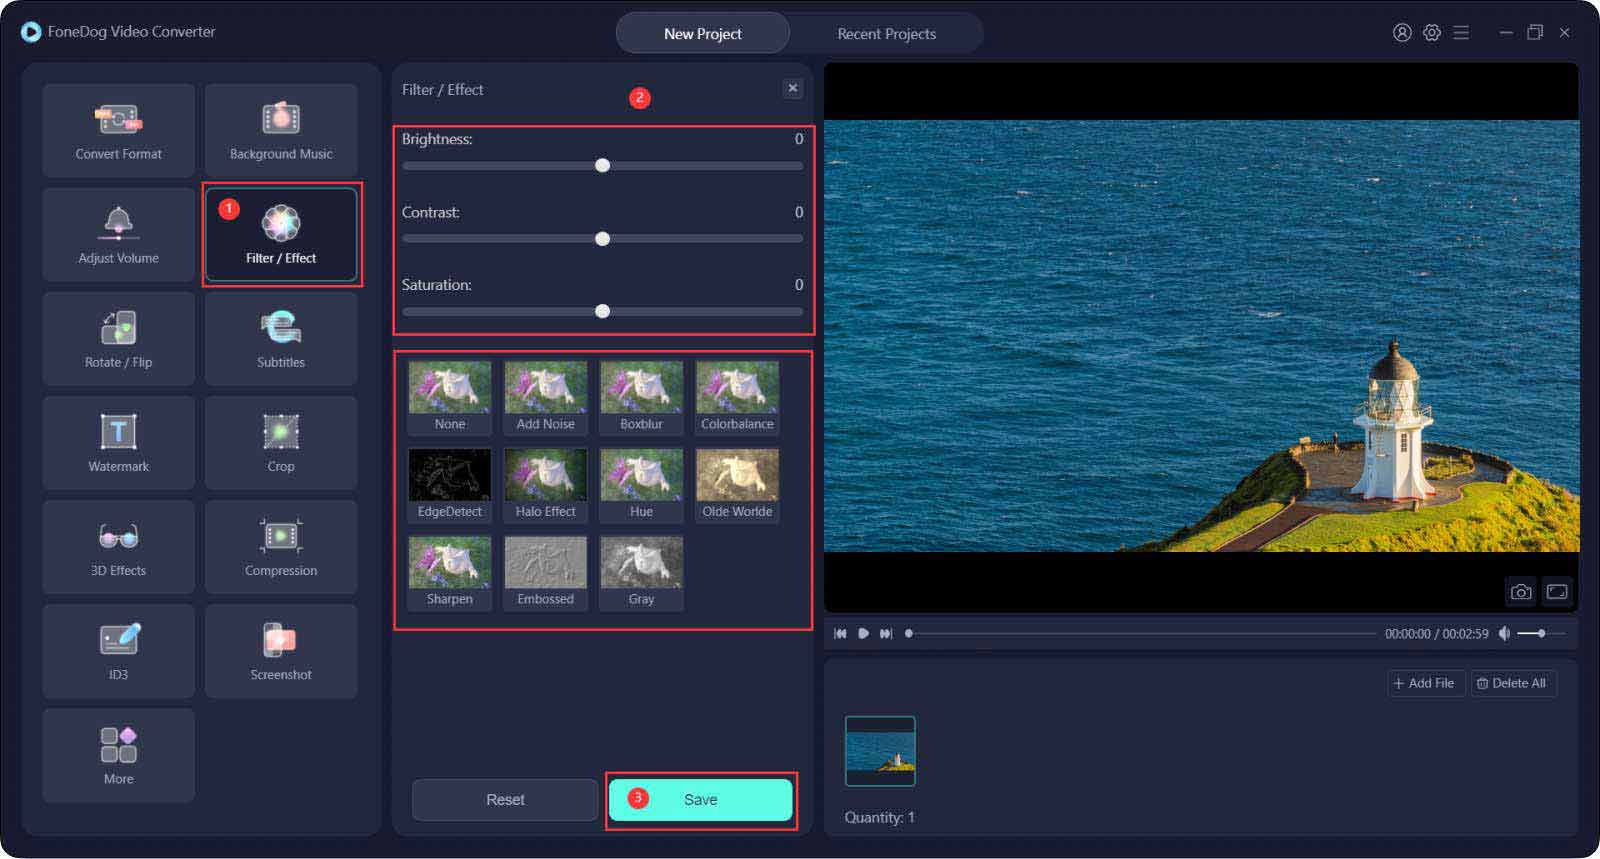 El mejor convertidor de video para combinar videos GoPro - FoneDog Video Converter: agregar efectos